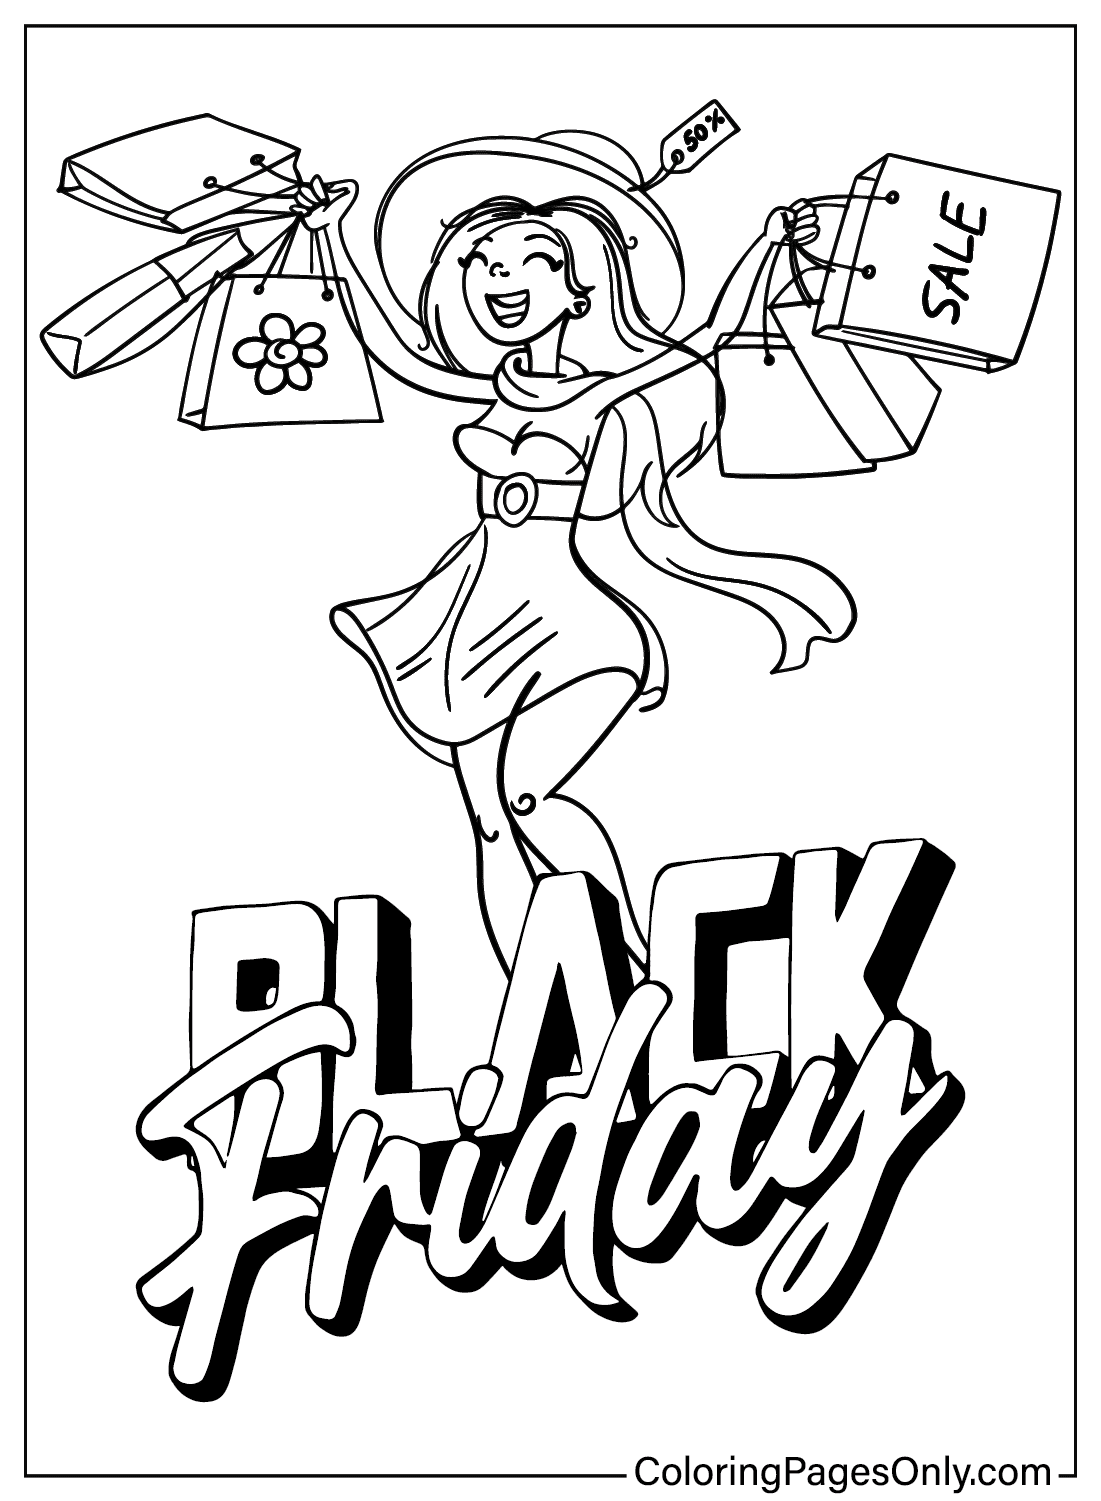 Página para colorear de Black Friday para adultos de Black Friday